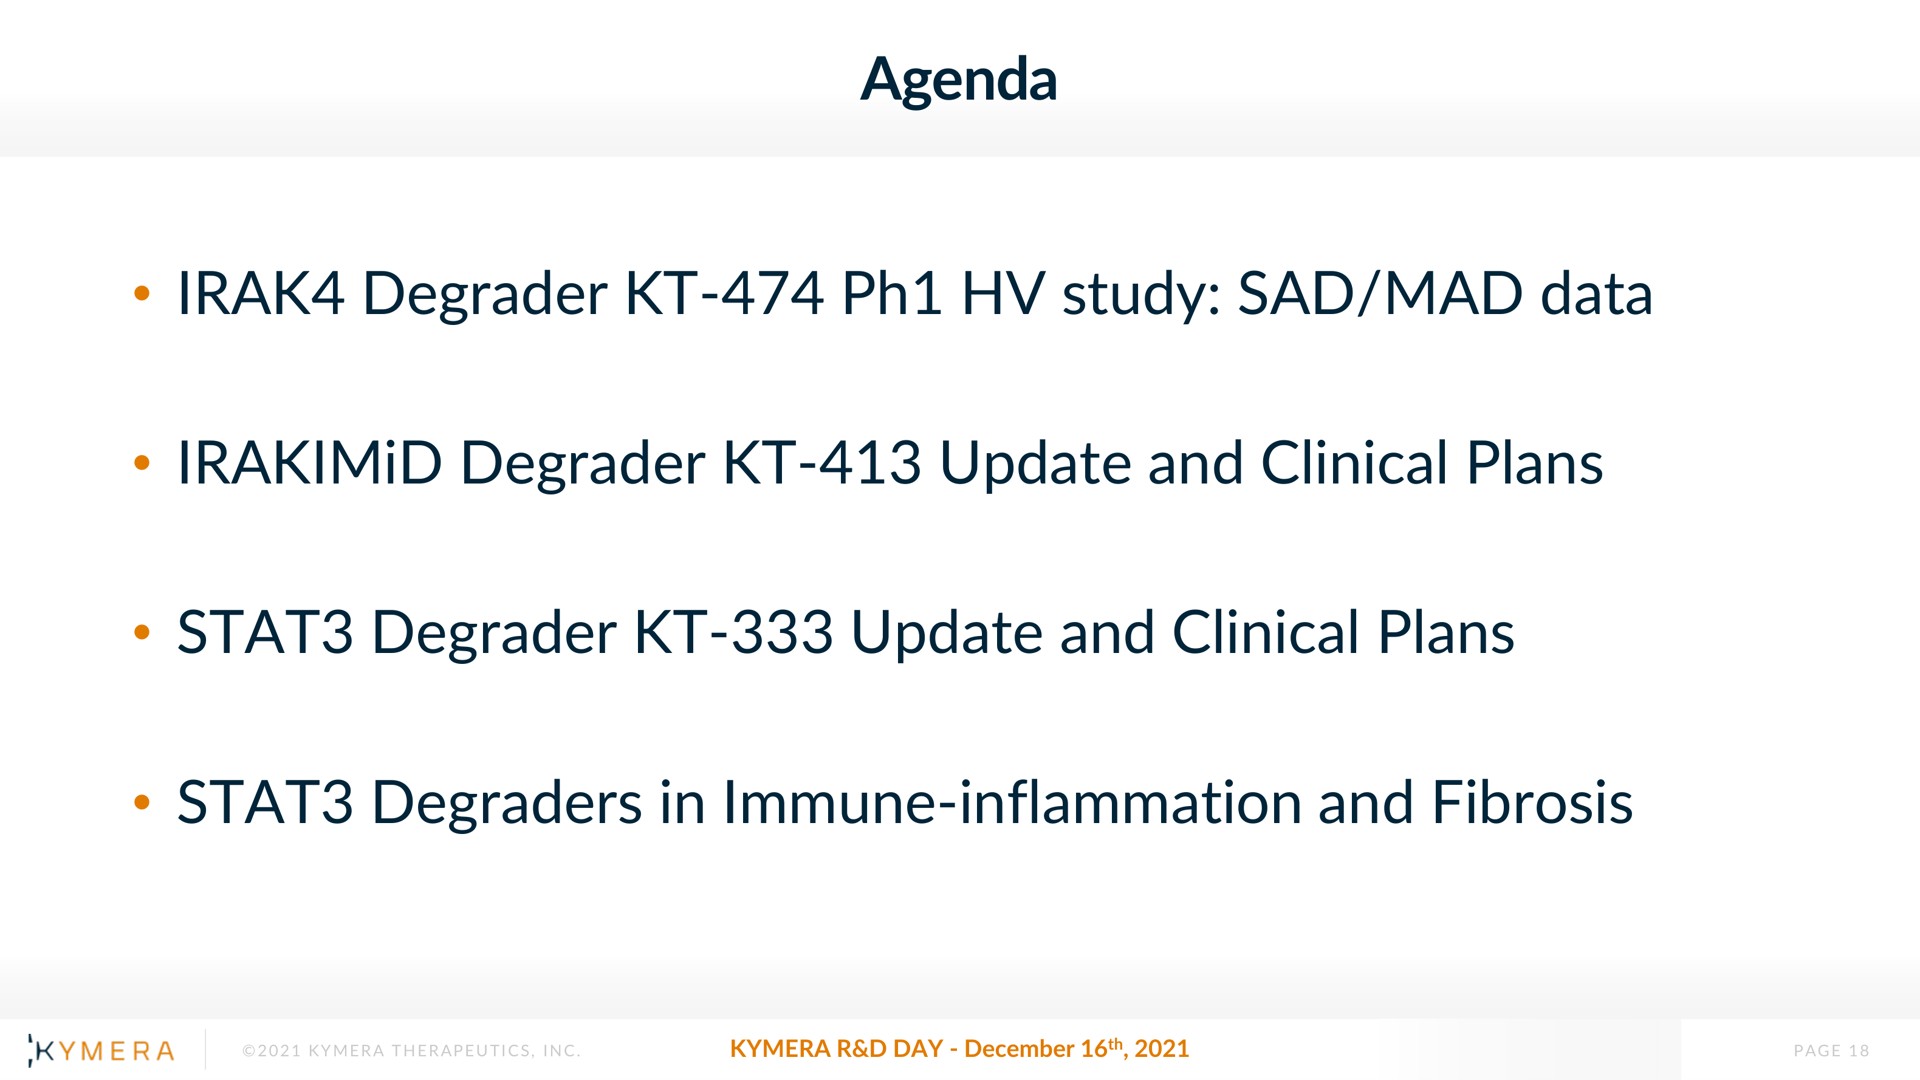 agenda degrader study sad mad data degrader update and clinical plans degrader update and clinical plans degraders in immune inflammation and fibrosis phi | Kymera